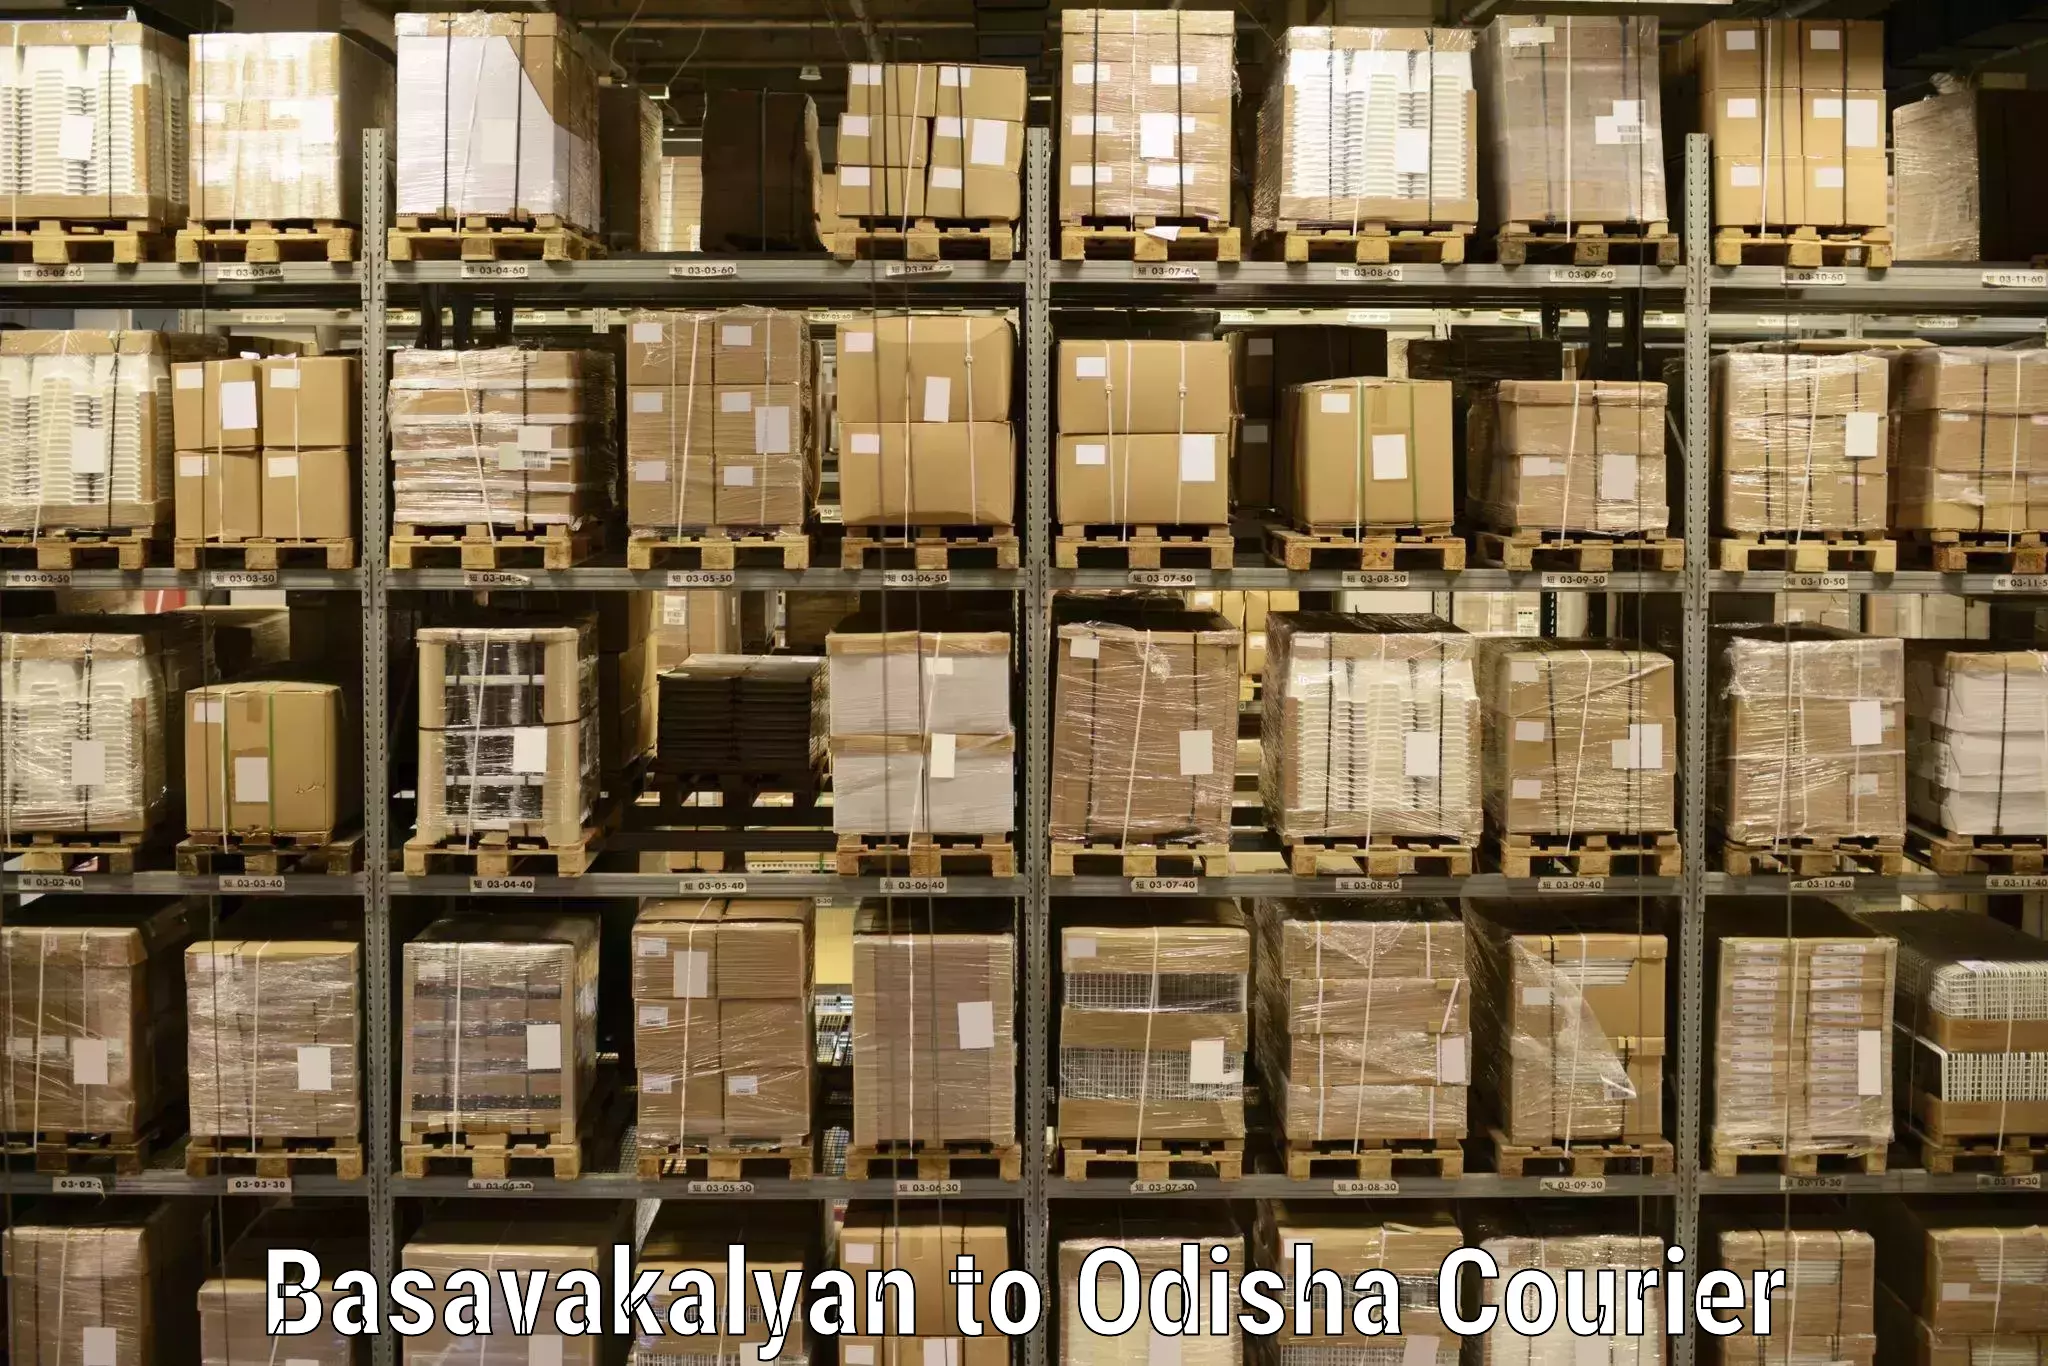 Multi-service courier options Basavakalyan to Koraput